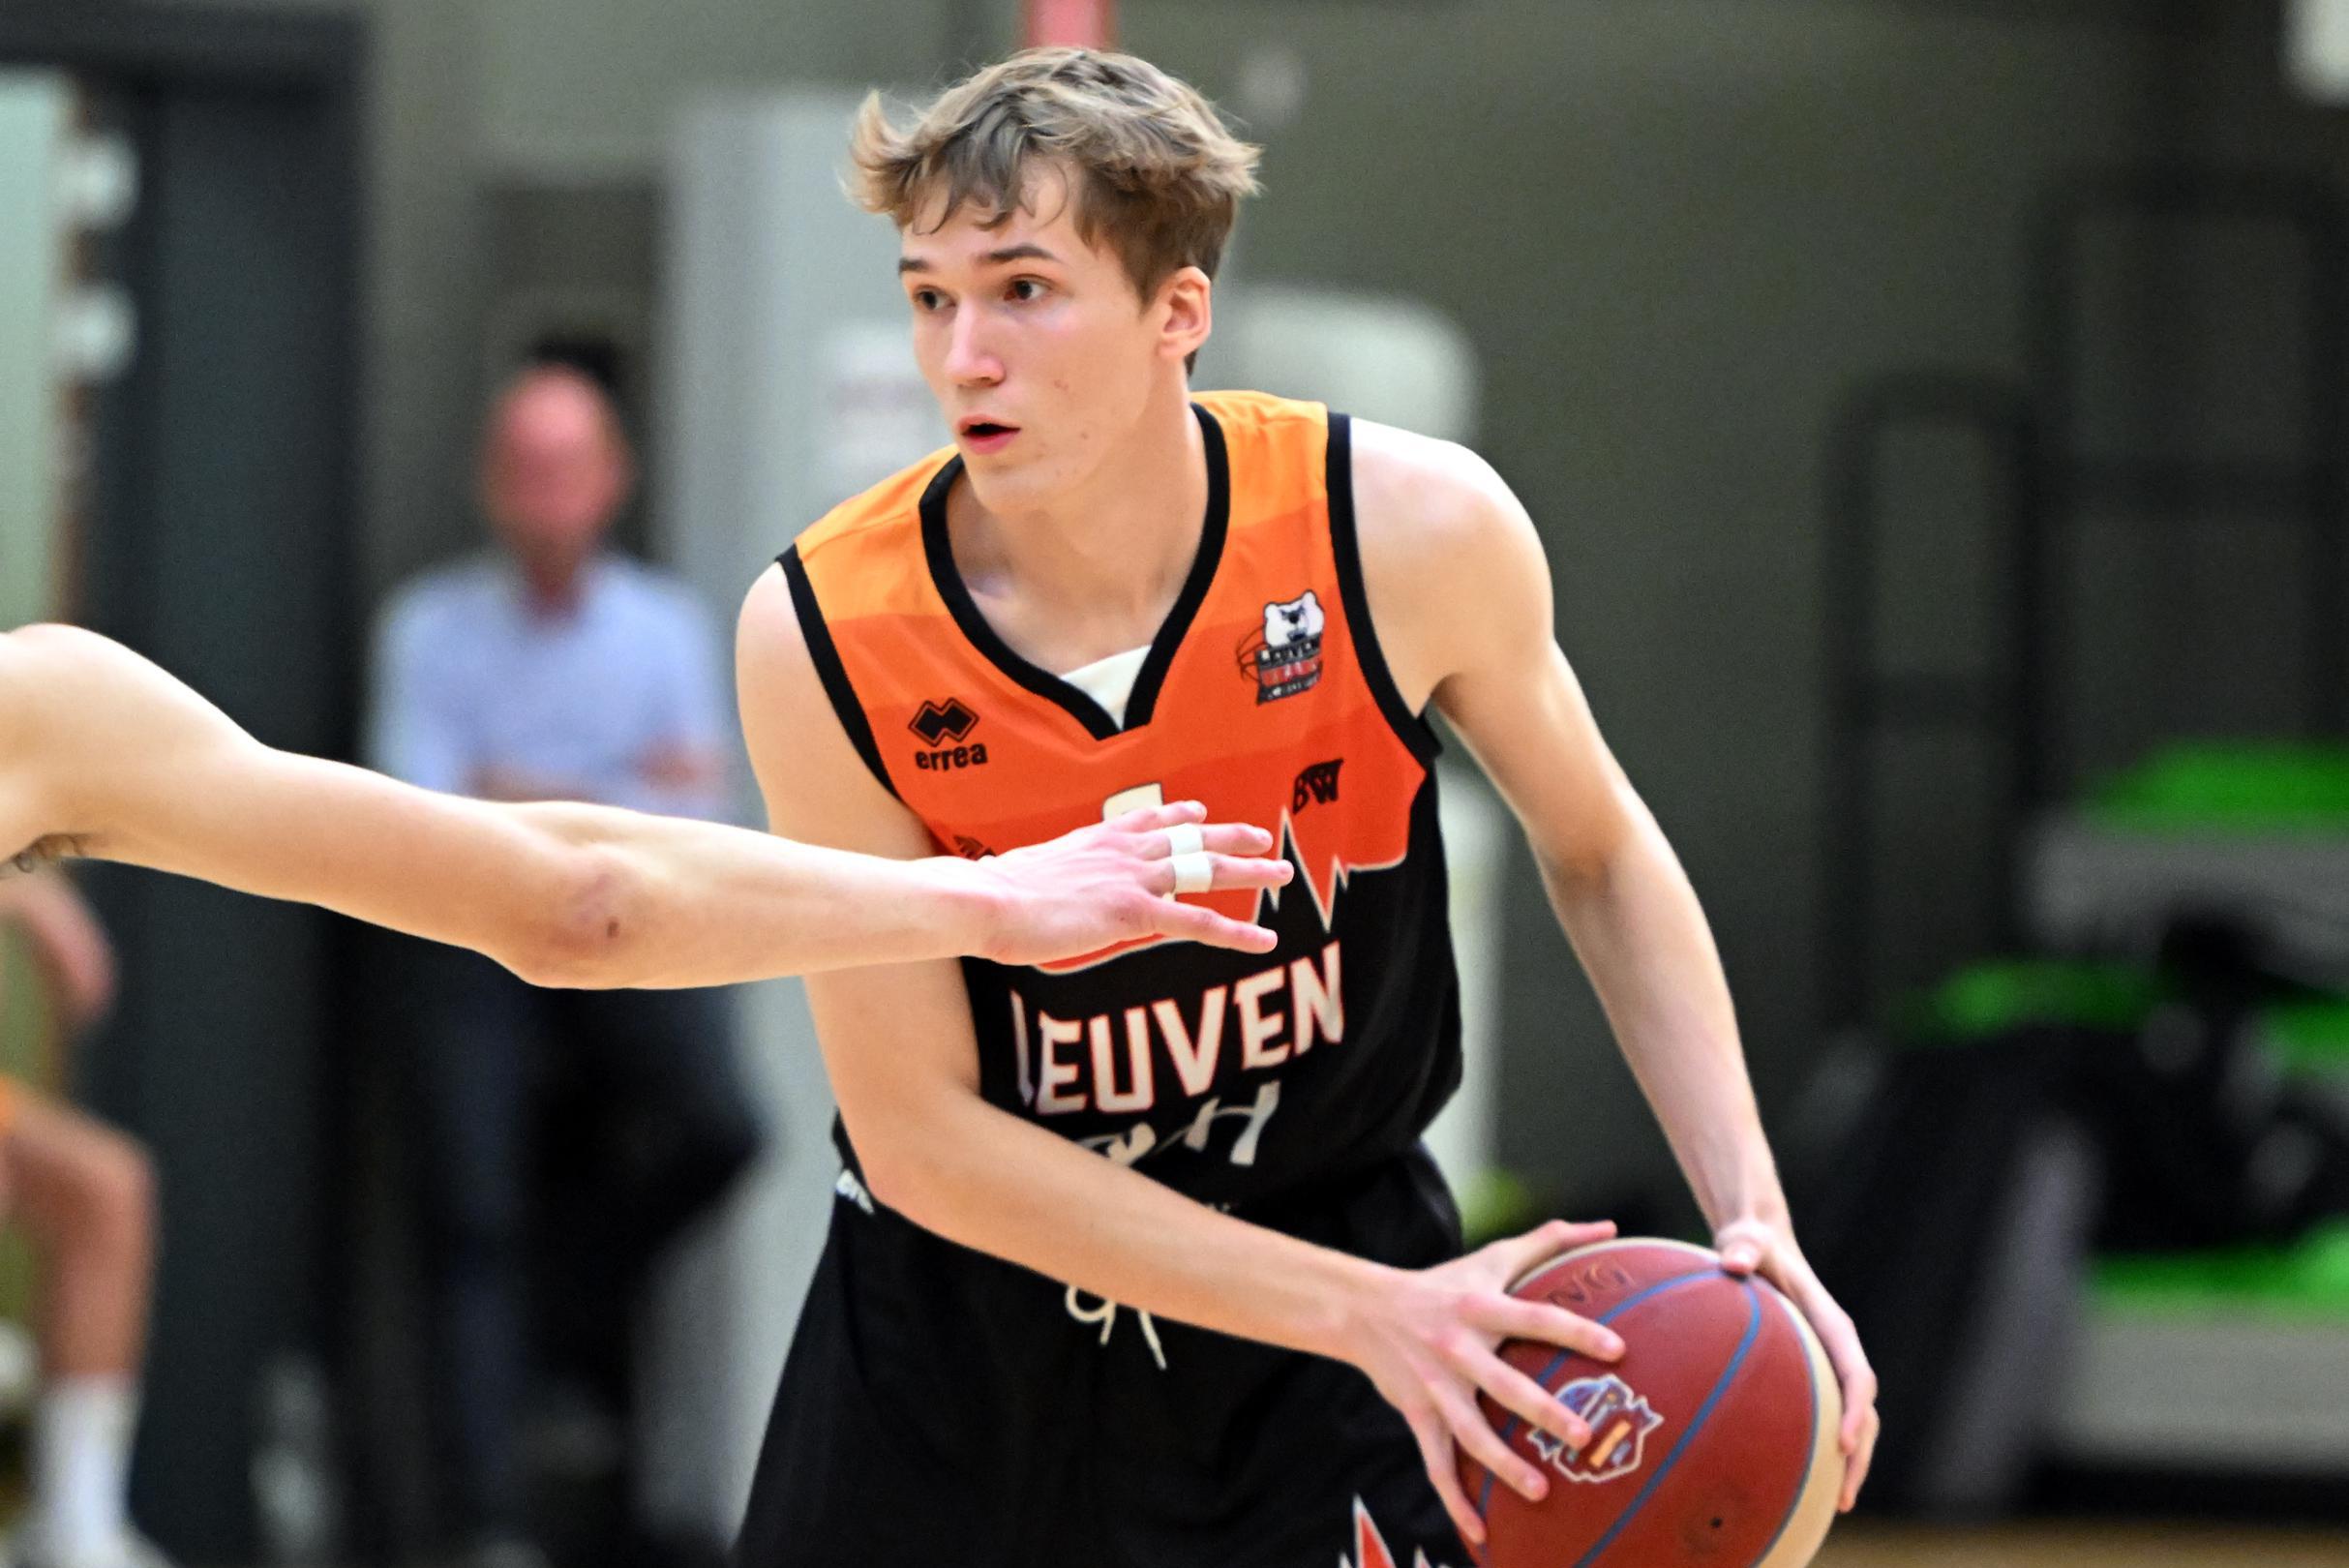 Lucas Ven verdeelt zijn tijd tussen universitaire scriptie over lachgas en basketbal bij Leuven Bears: “Het deed veel deugd om voor de eerste keer een kwartier te spelen met de A-ploeg”